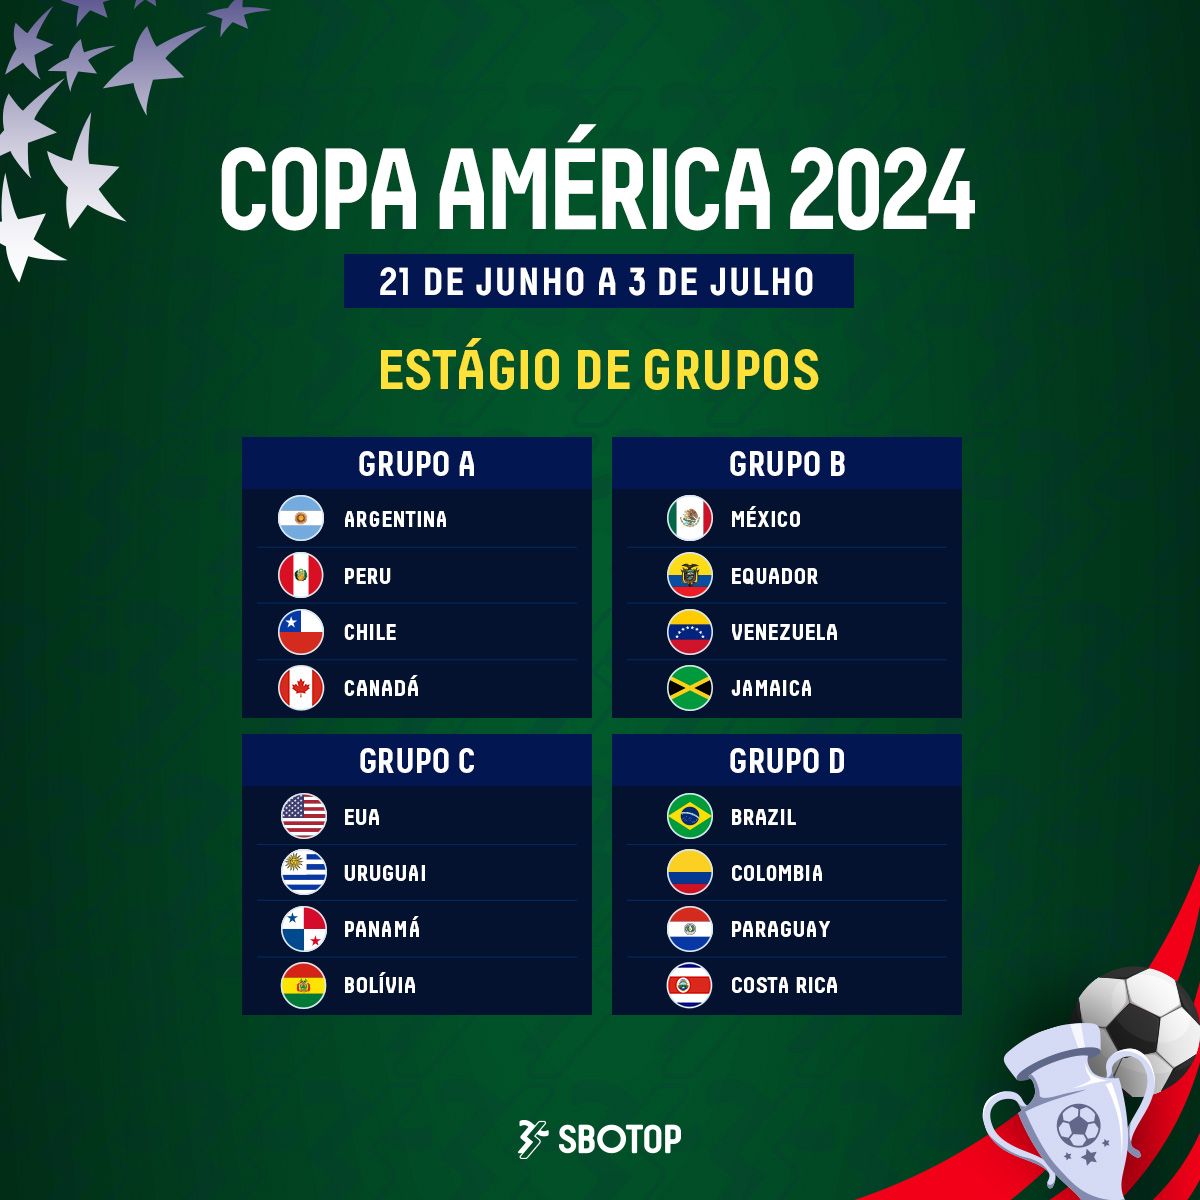 #CopaAmerica2024 está quase chegando! Quem conquistará seu grupo e chegará ao topo?